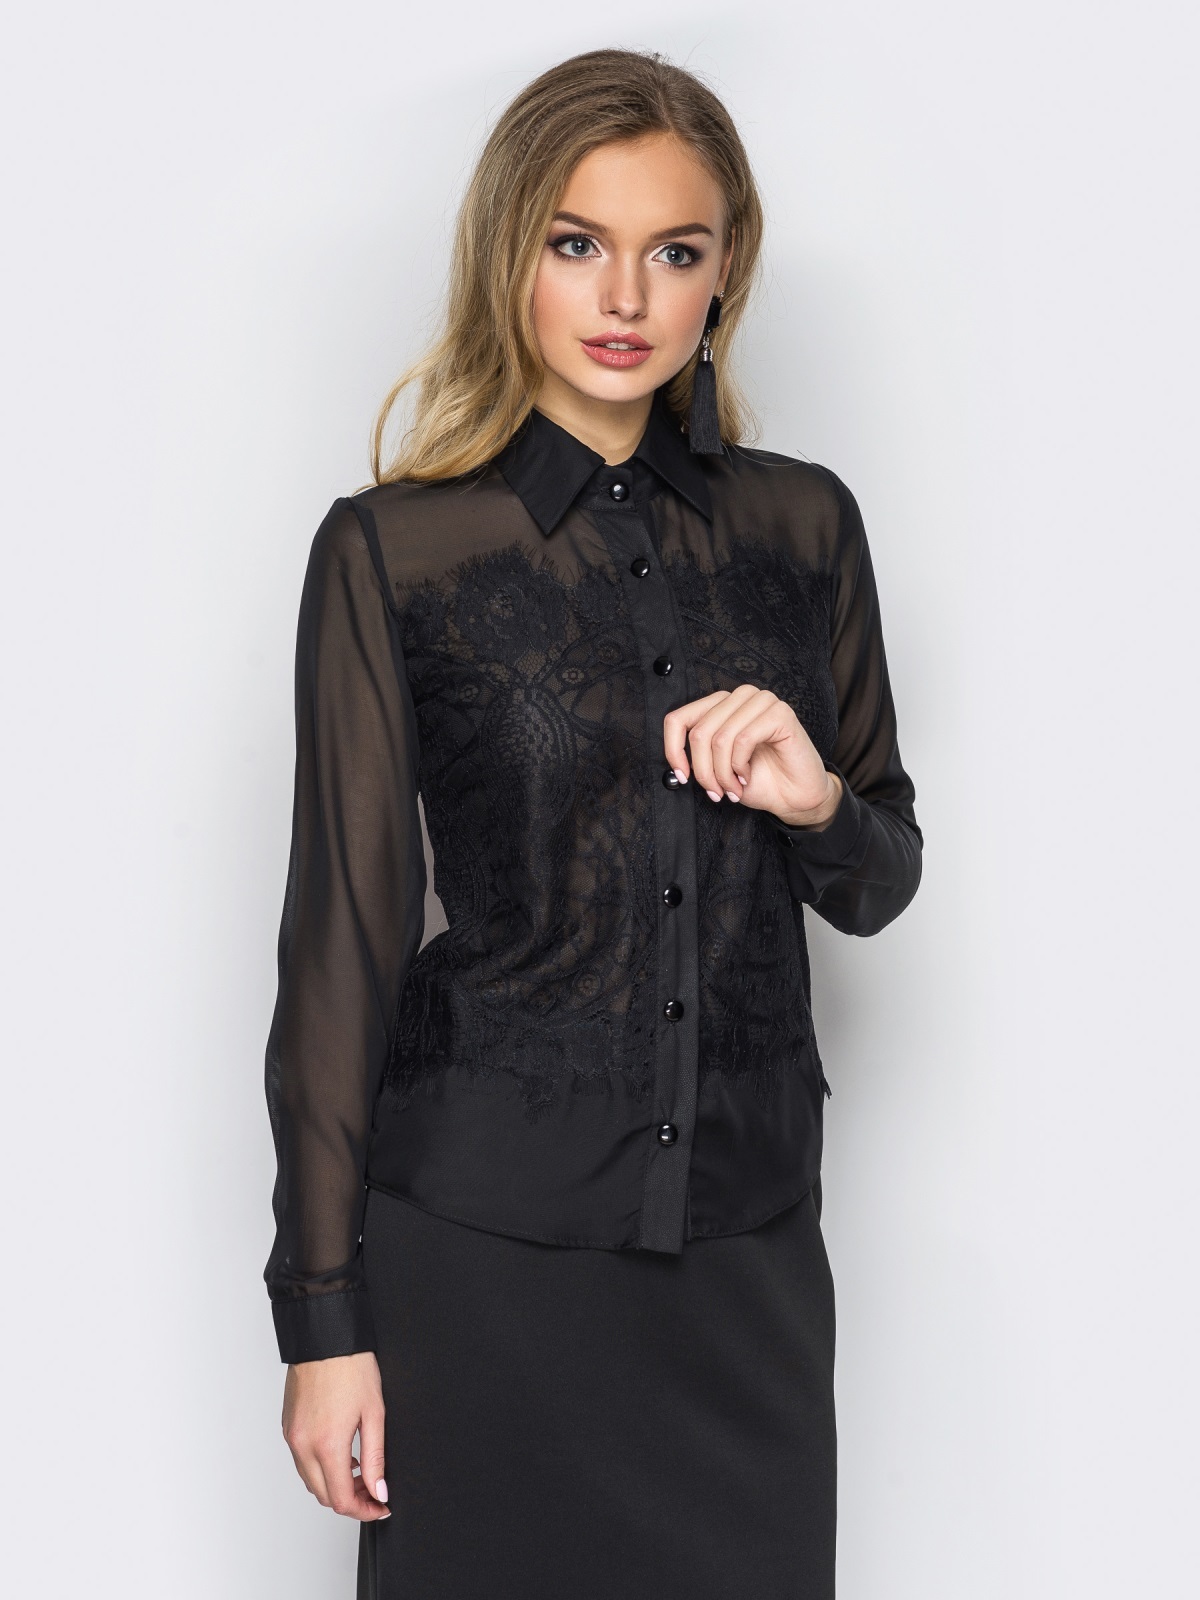 Черная блузка с длинным рукавом. Karen Millen черная блузка. Чёрная блузка женская. Черная шифоновая рубашка. Черная прозрачная блузка.